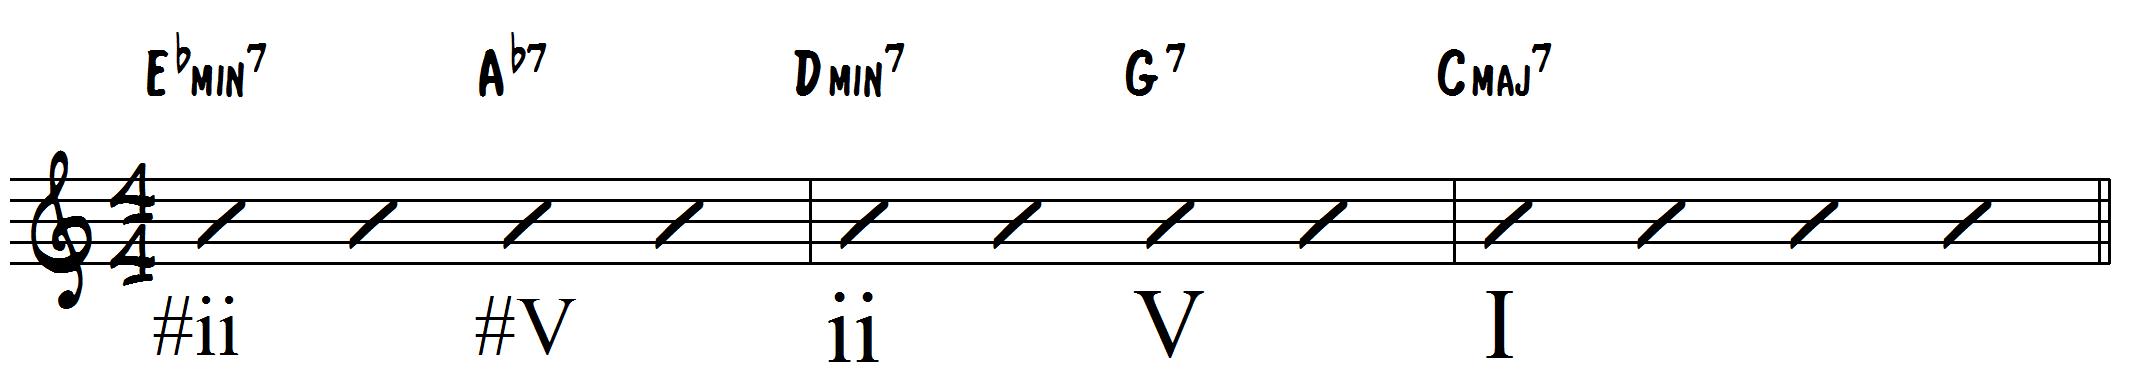 Chromatic ii-V's Jazz Chord Progression